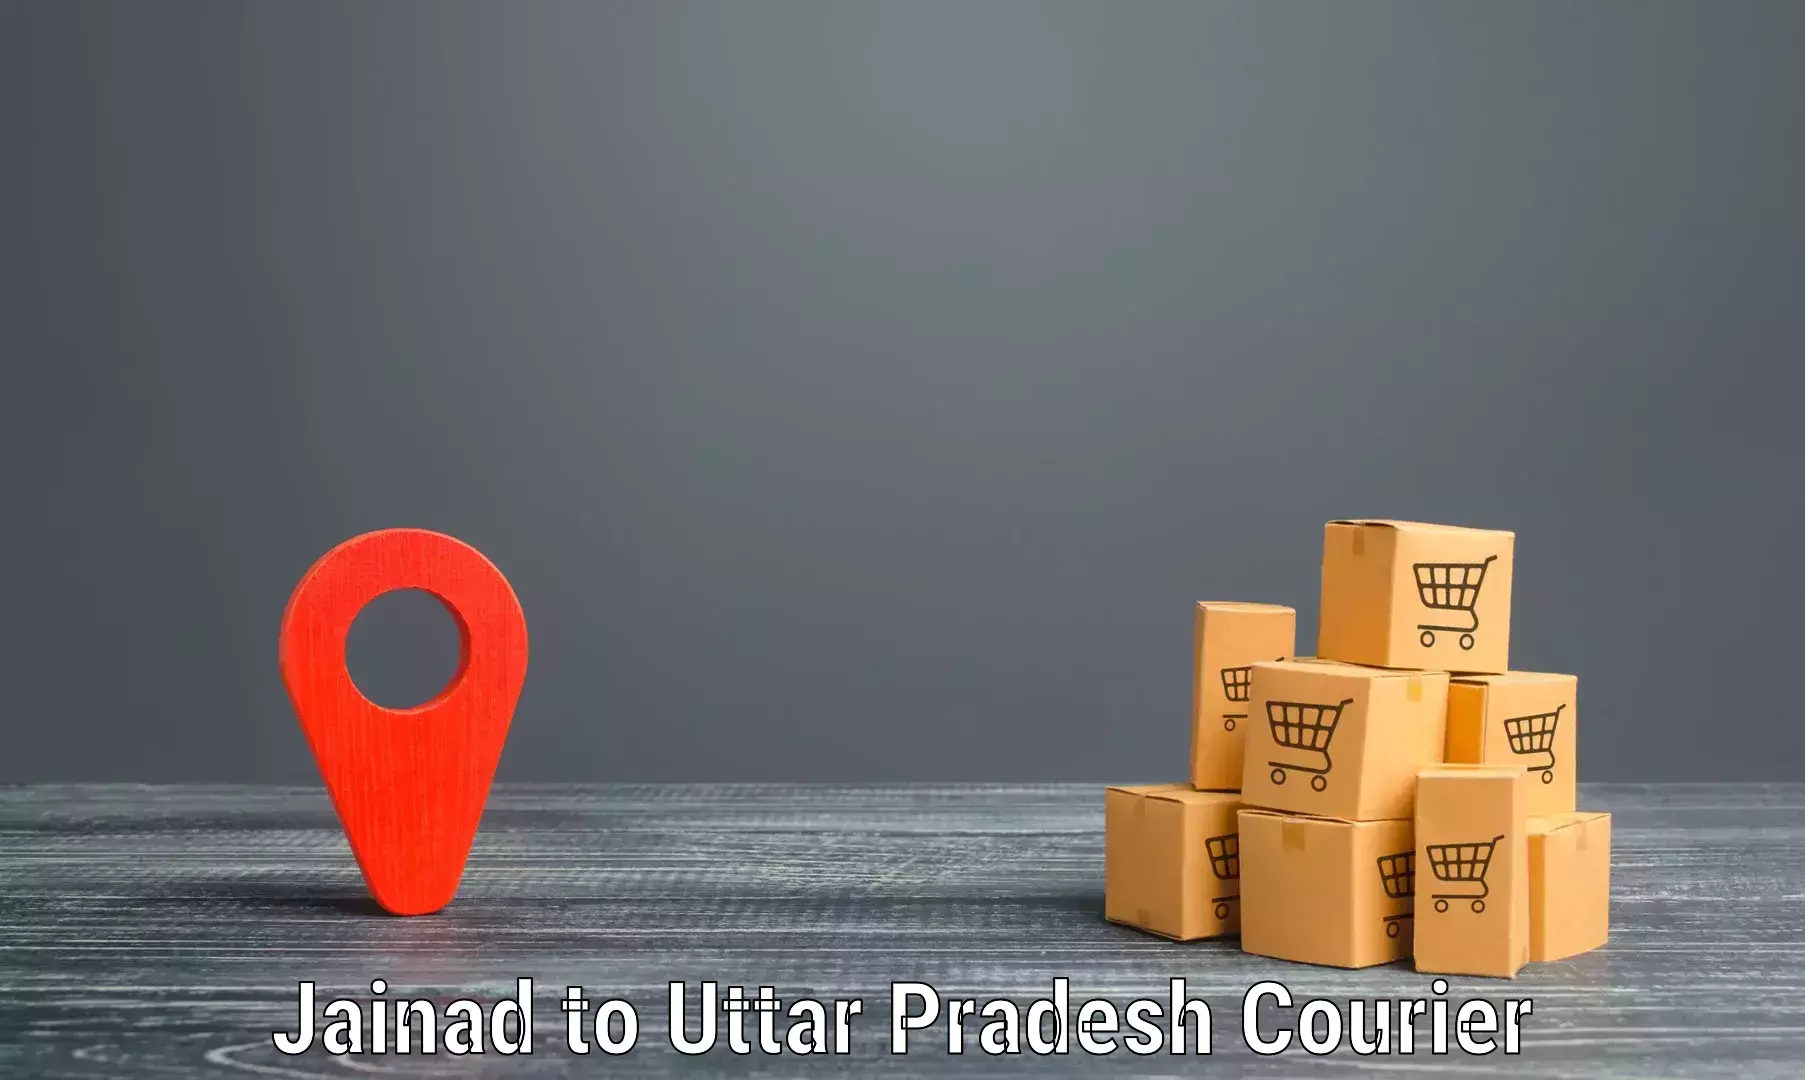 Efficient shipping operations Jainad to Uttar Pradesh